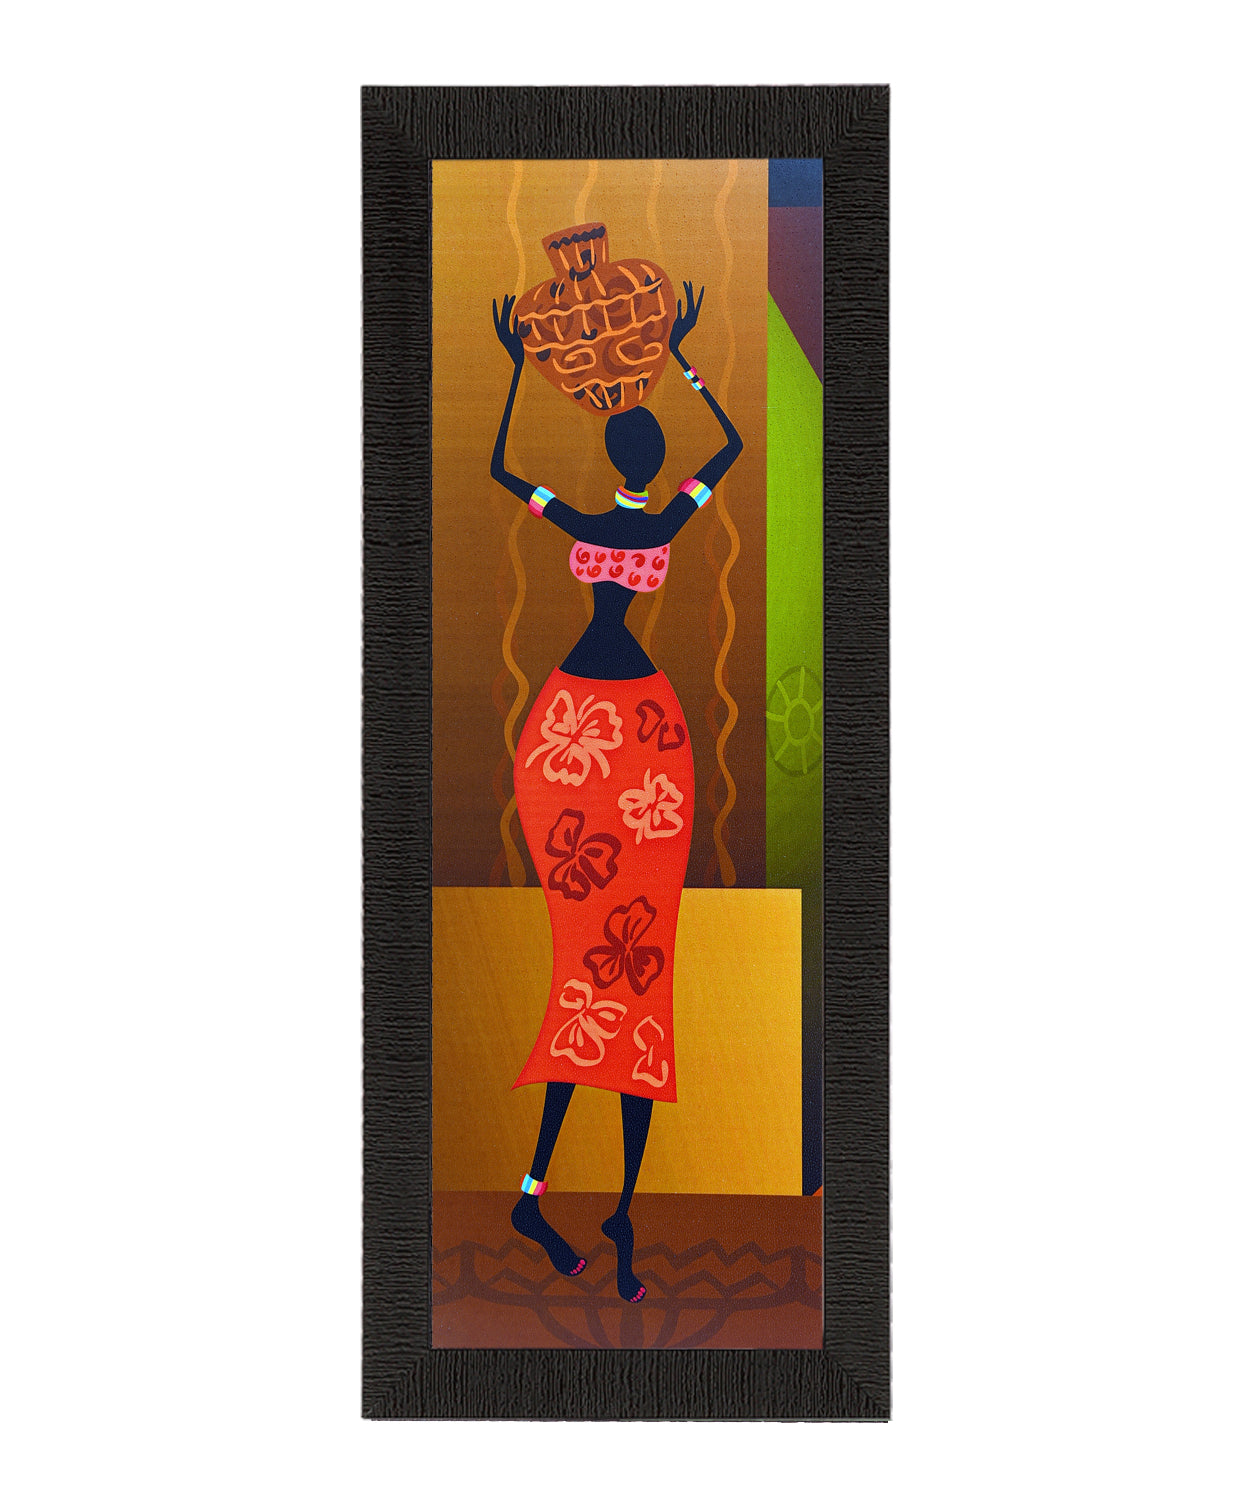 Tribal Woman With Vase Satin Matt Texture UV Art Painting